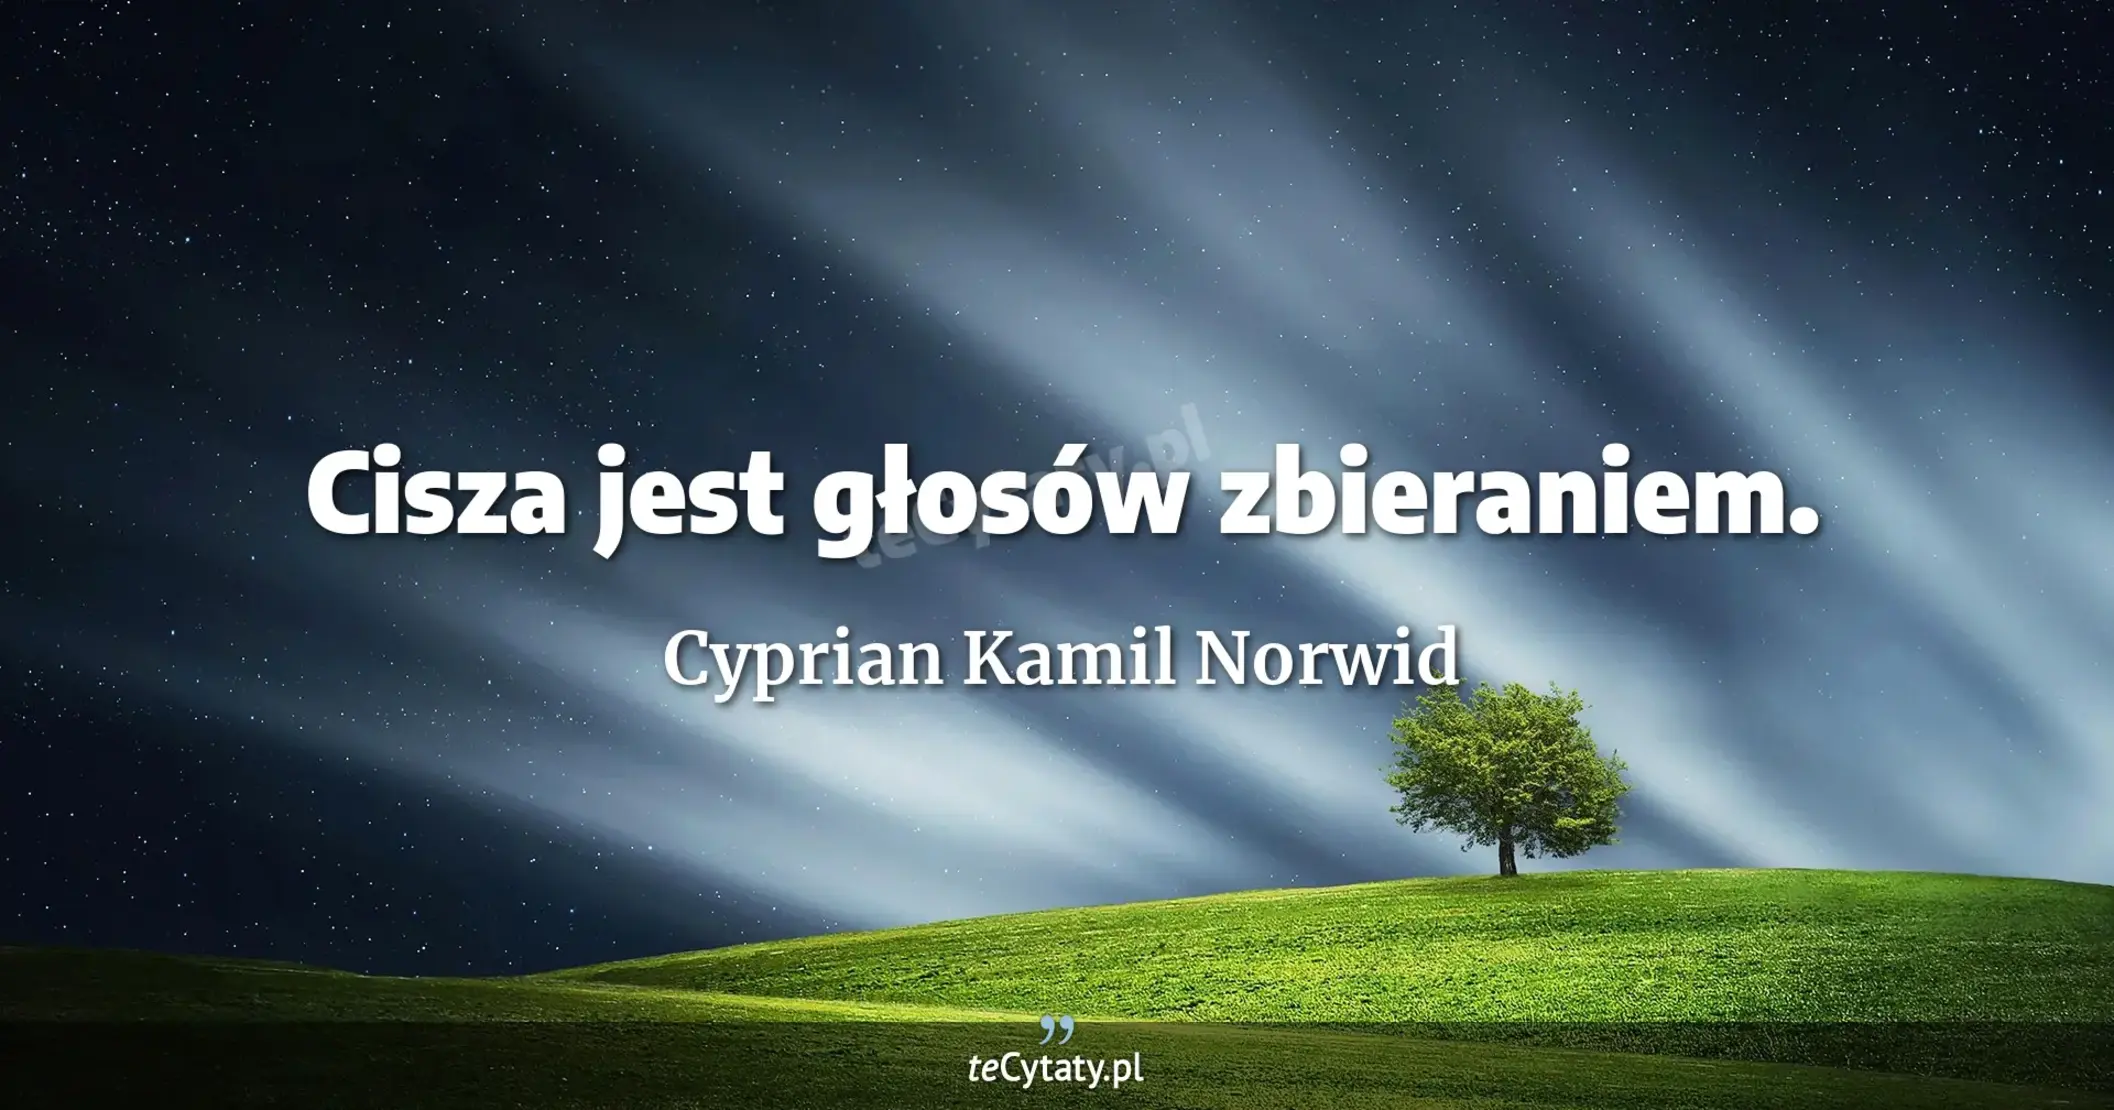 Cisza jest głosów zbieraniem. - Cyprian Kamil Norwid